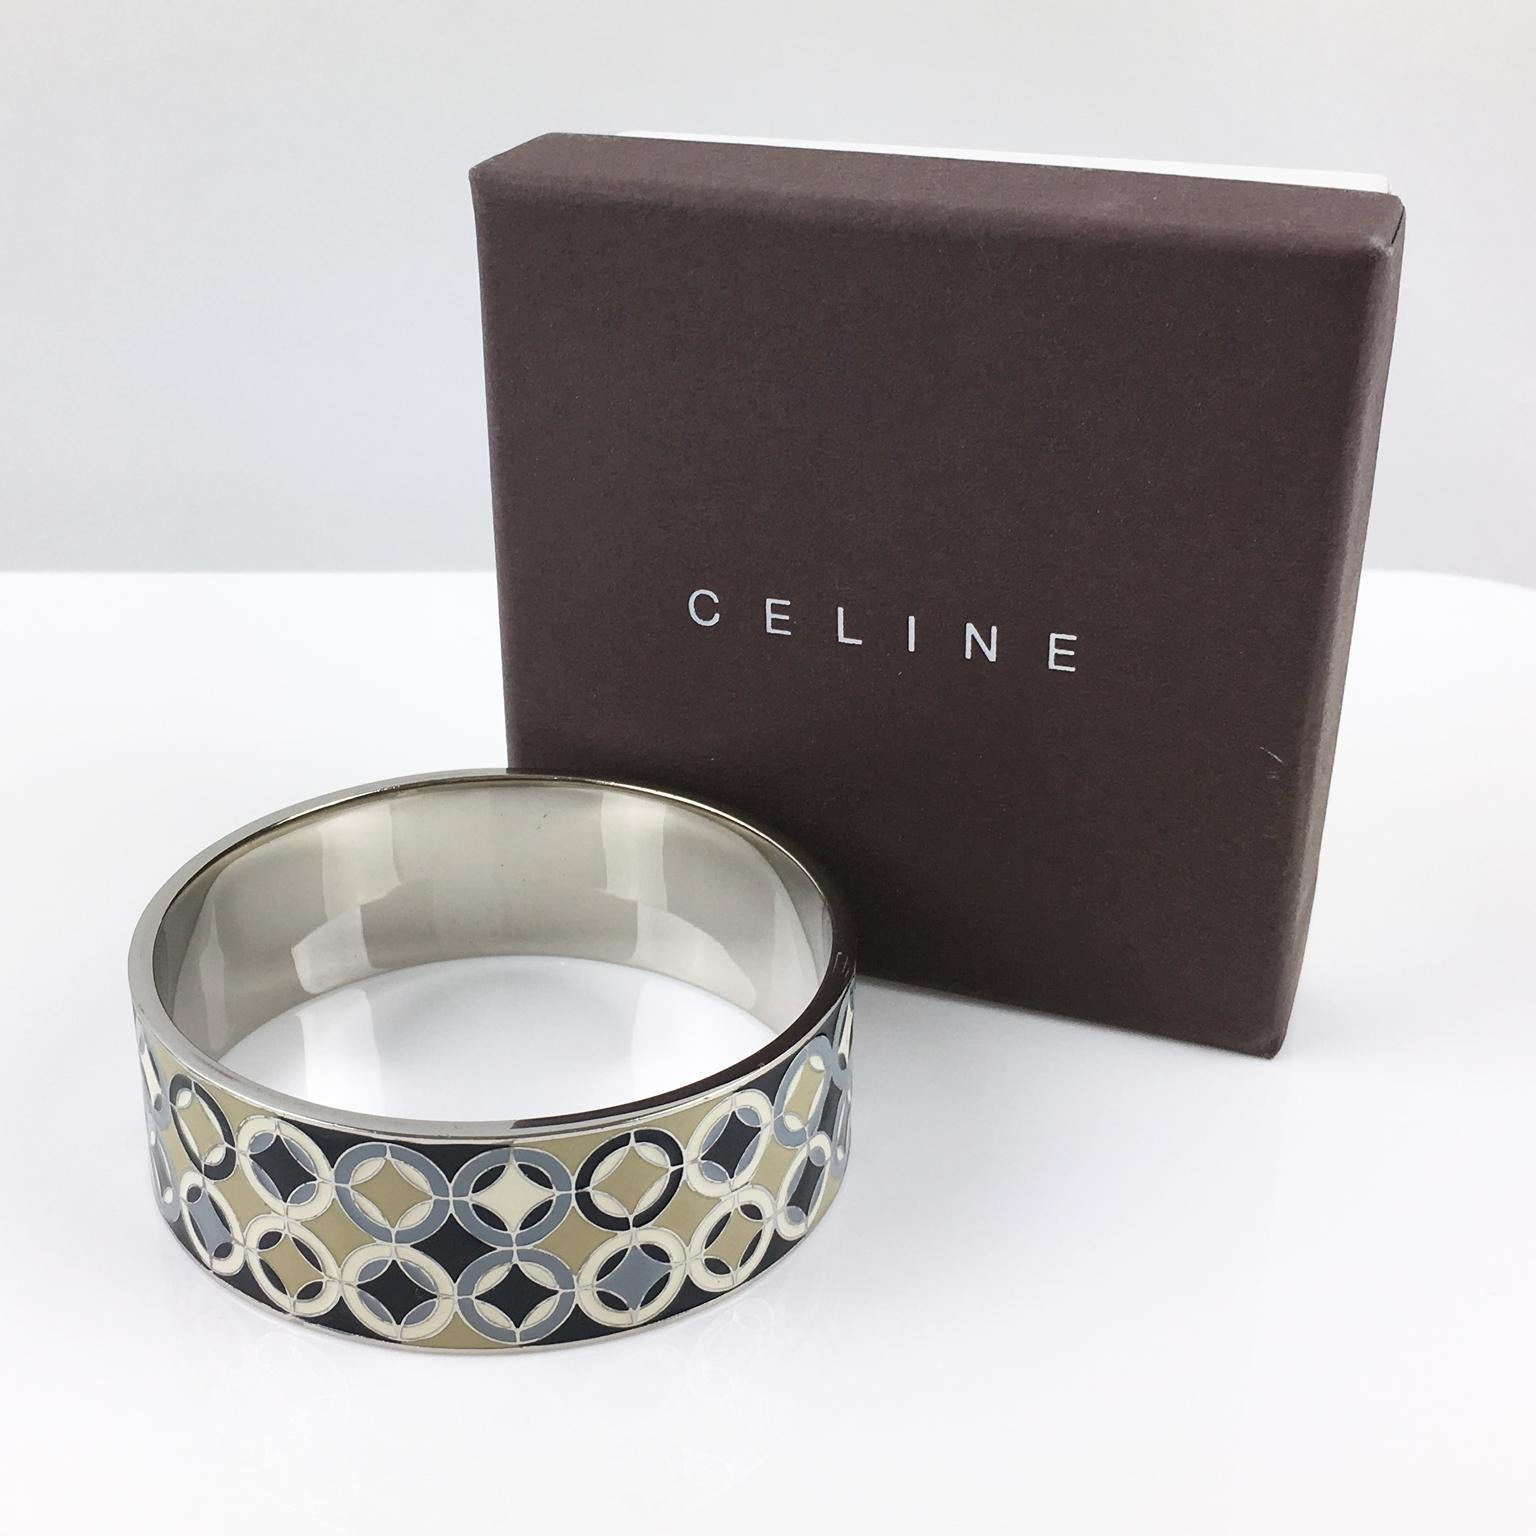 Dieser hübsche Armreif von Celine Paris aus Silberblech hat eine klobige, in Scheiben geschnittene Bandform mit einem geometrischen, modernistischen, emaillierten Design in verschiedenen Schwarz-, Grau-, Beige- und Elfenbeinfarben. Das Stück ist am